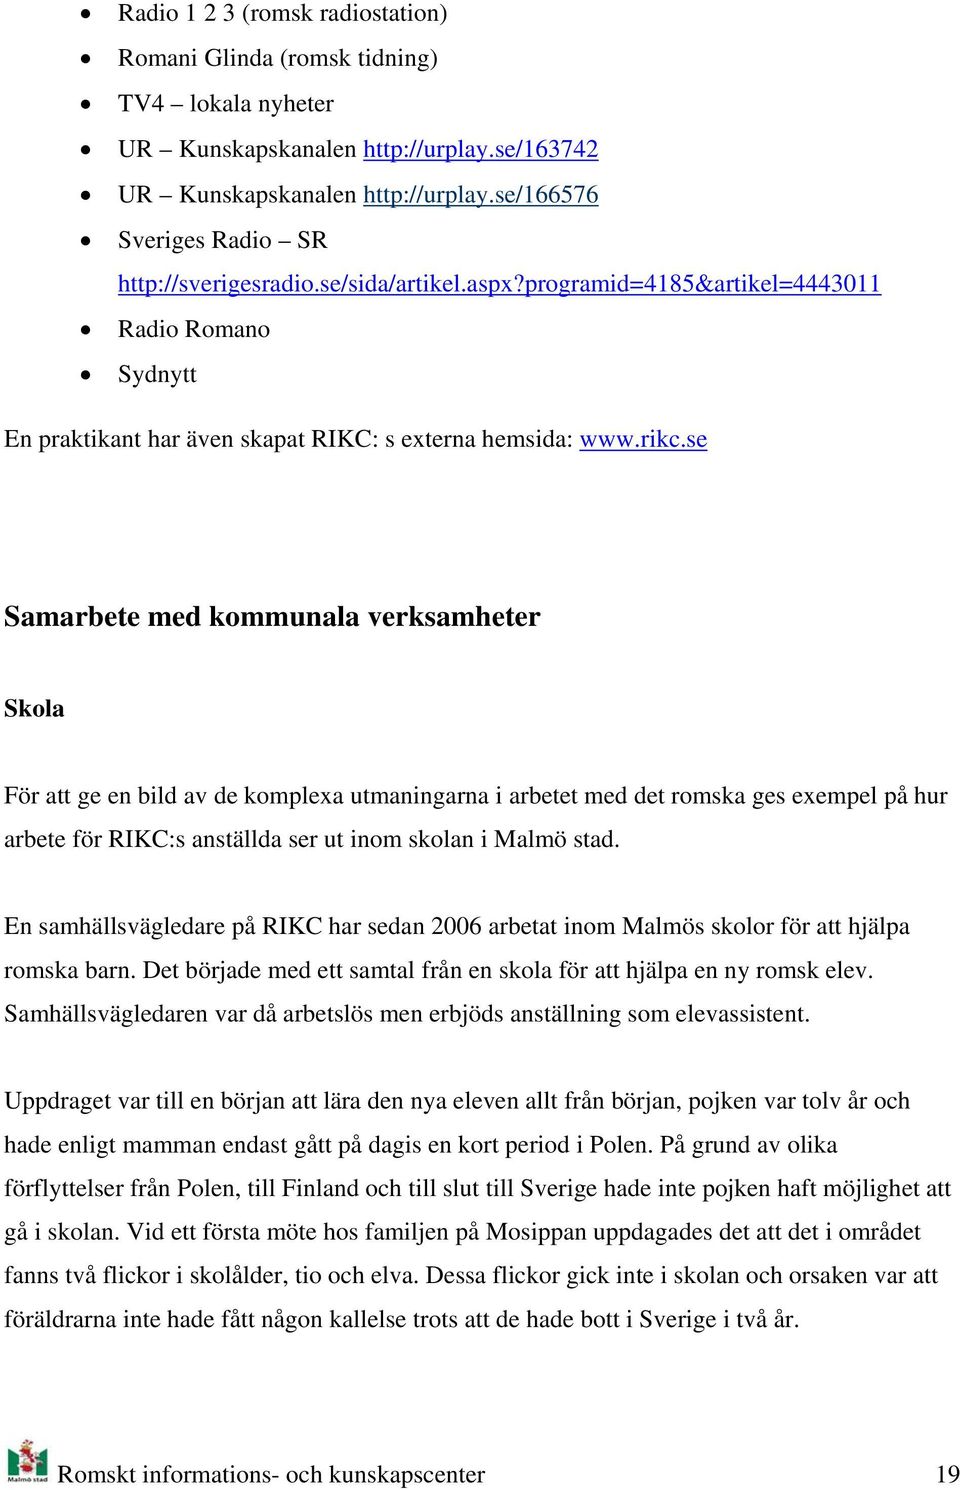 se Samarbete med kmmunala verksamheter Skla För att ge en bild av de kmplexa utmaningarna i arbetet med det rmska ges exempel på hur arbete för RIKC:s anställda ser ut inm sklan i Malmö stad.